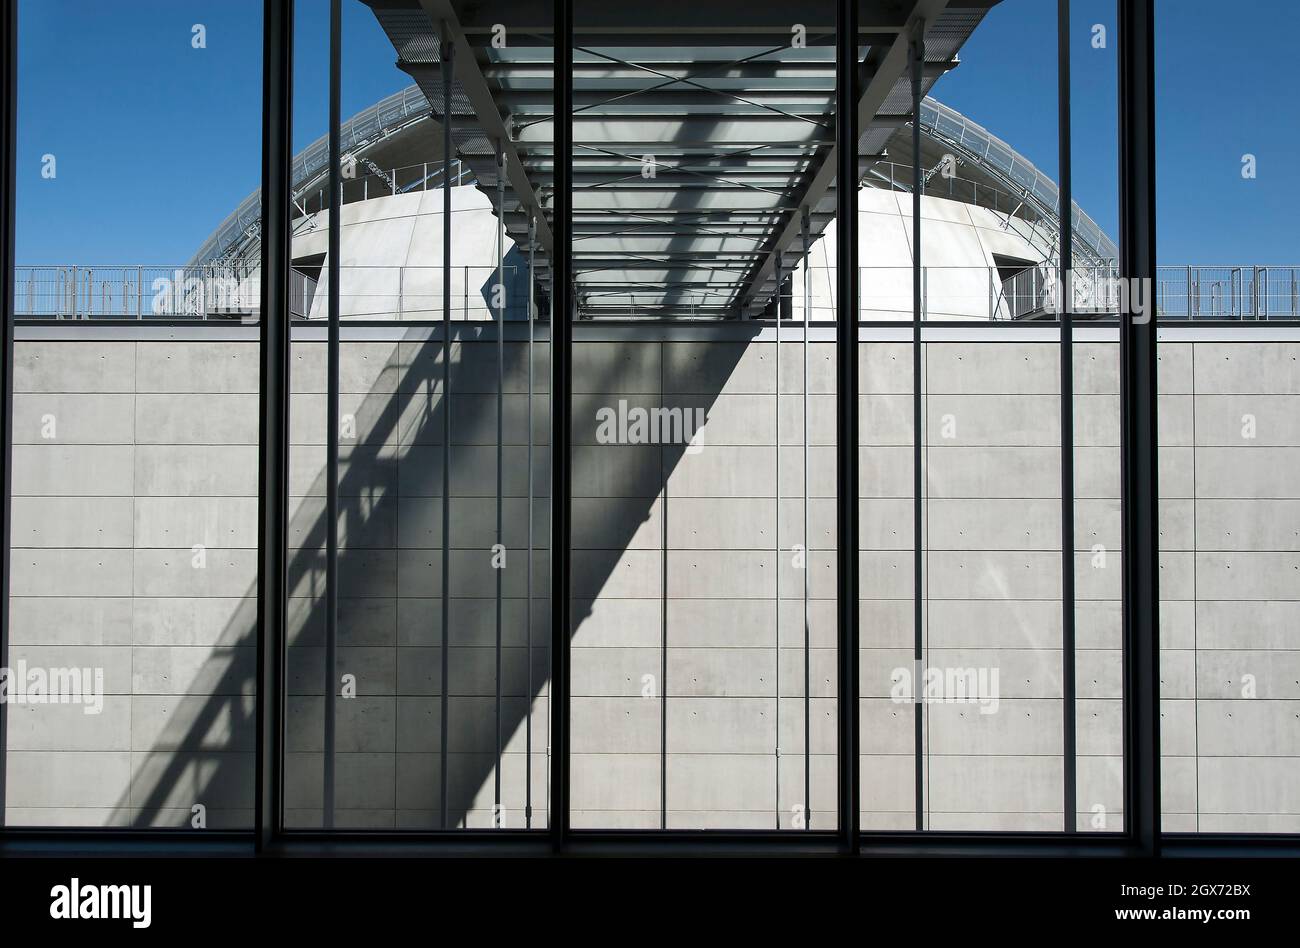 Blick auf das Sphere Building vom Saban Building im Academy Museum of Motion Picturs in Los Angeles, Kalifornien. Architektur von Renzo Piano. Stockfoto